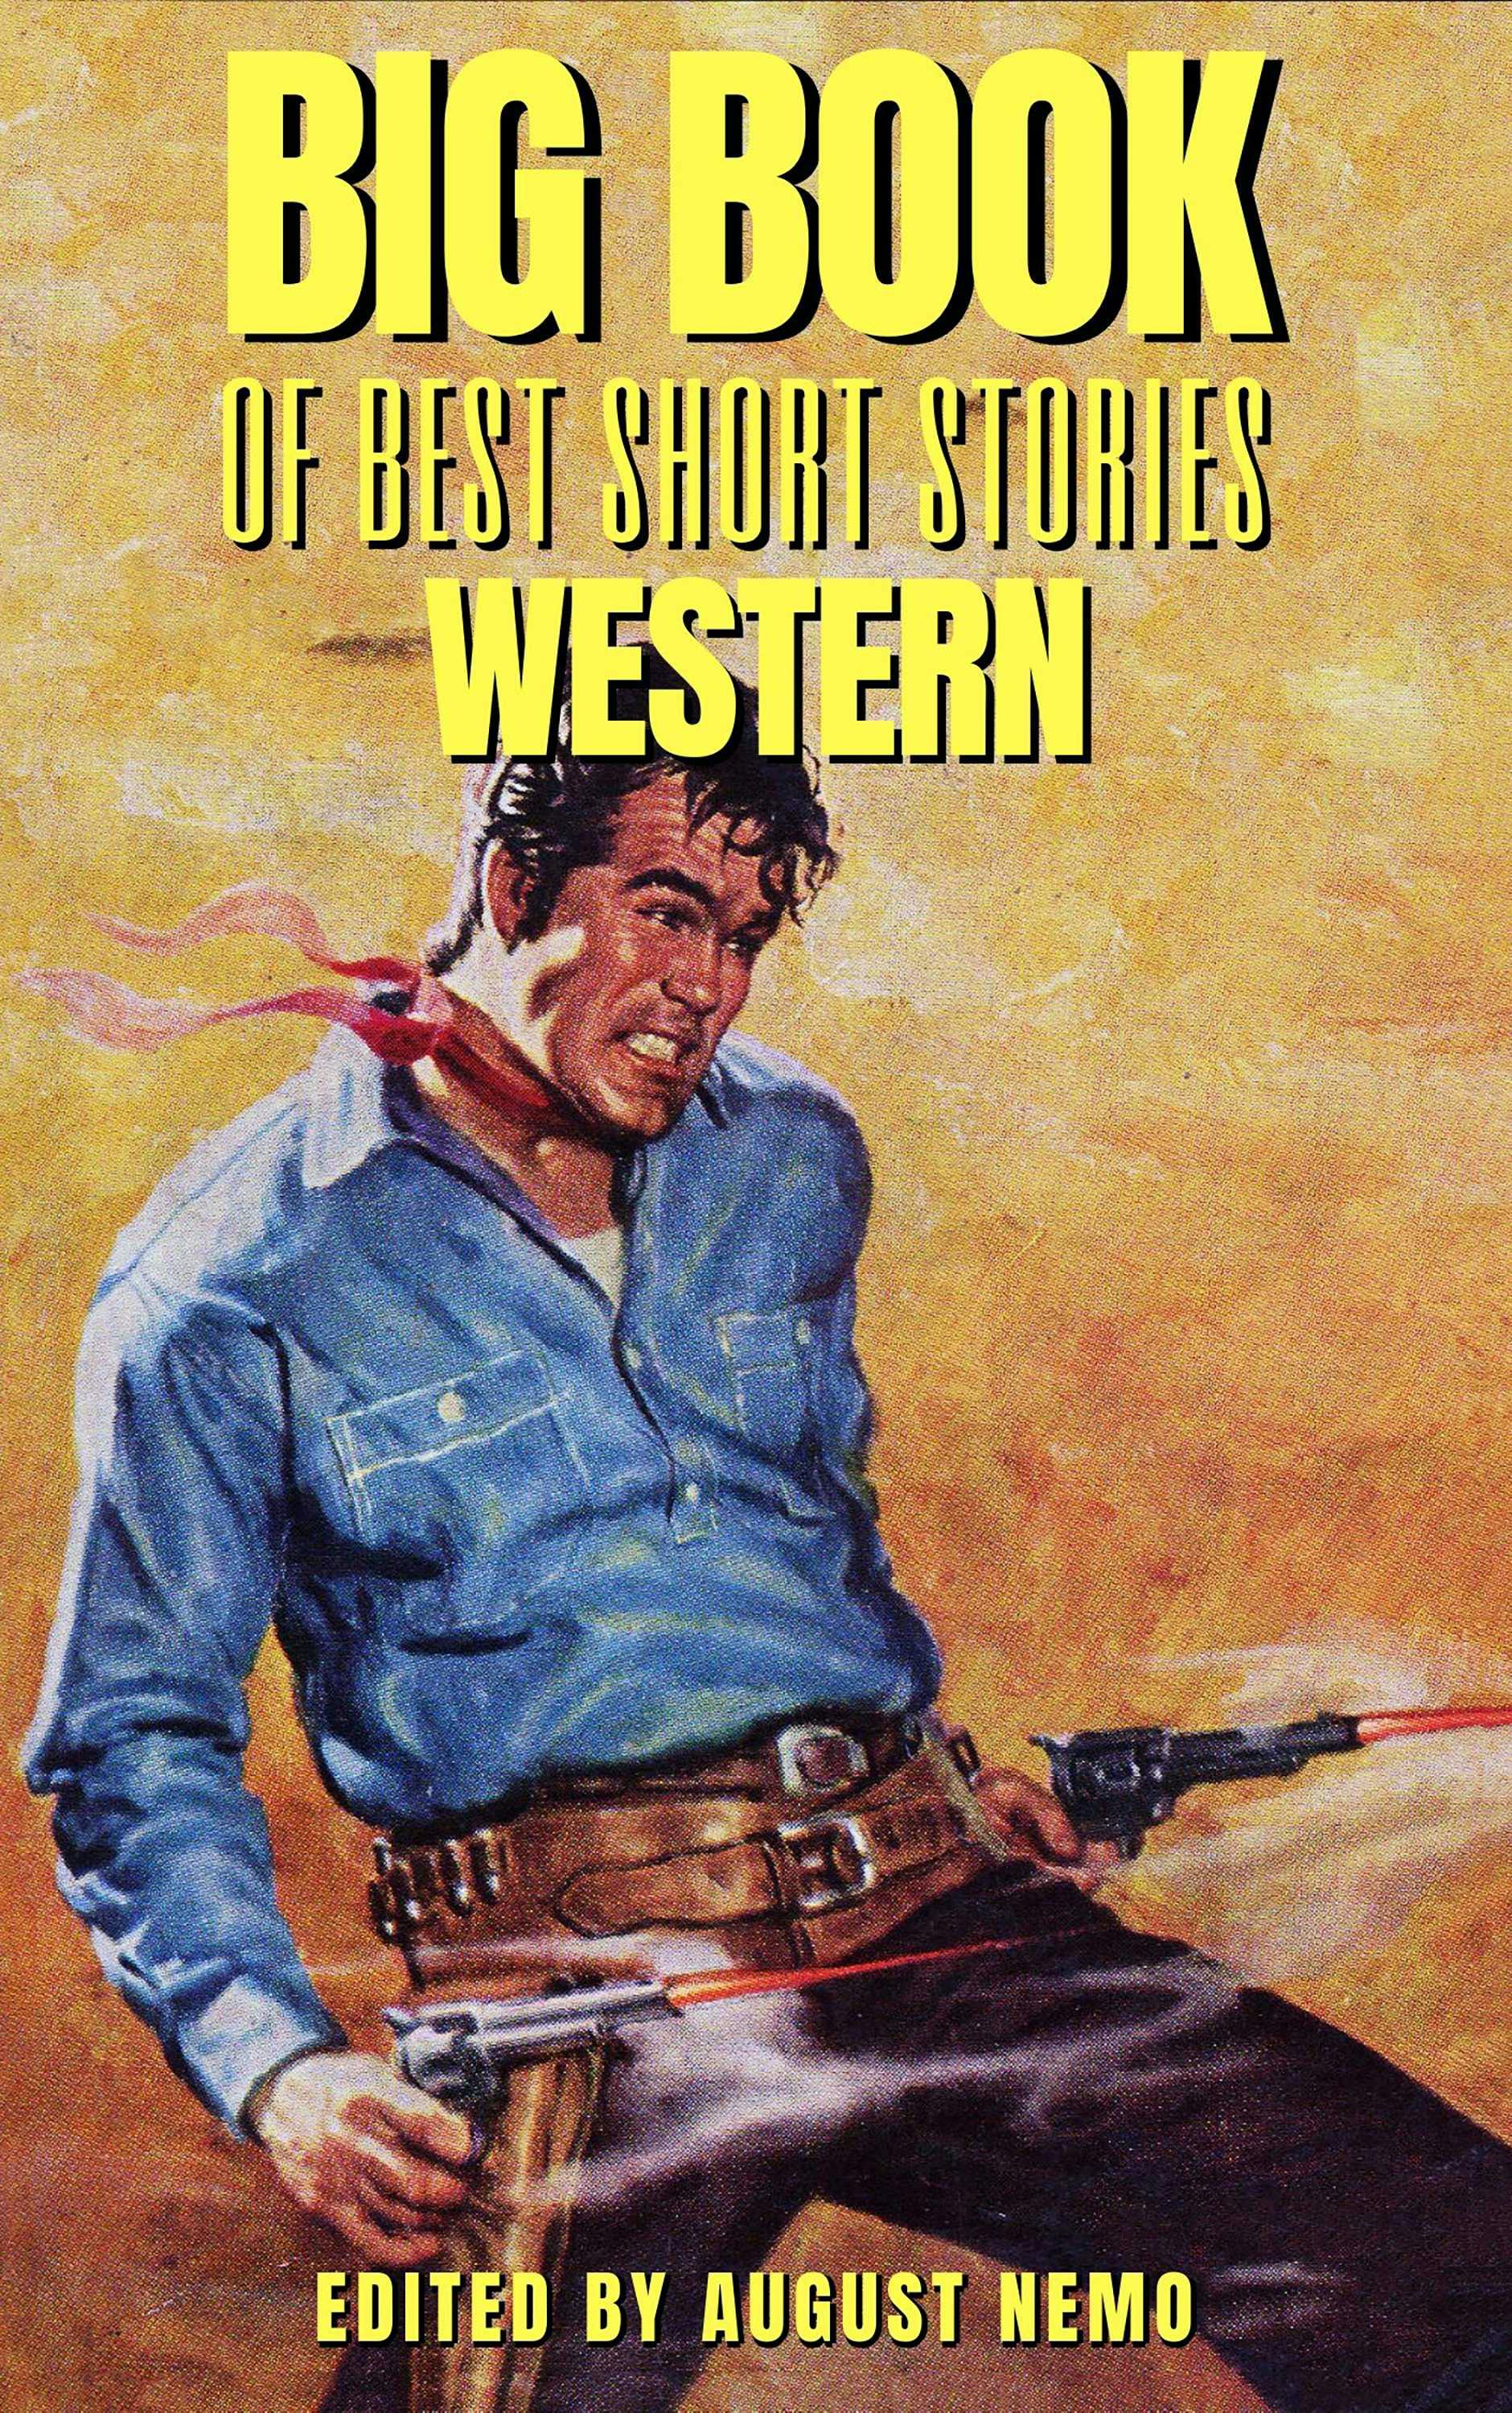 Big Book of Best Short Stories - Specials - Western: Volume 2 - Andy Adams, Bret Harte, Hamlin Garland, B. M. Bower, August Nemo, Zane Grey